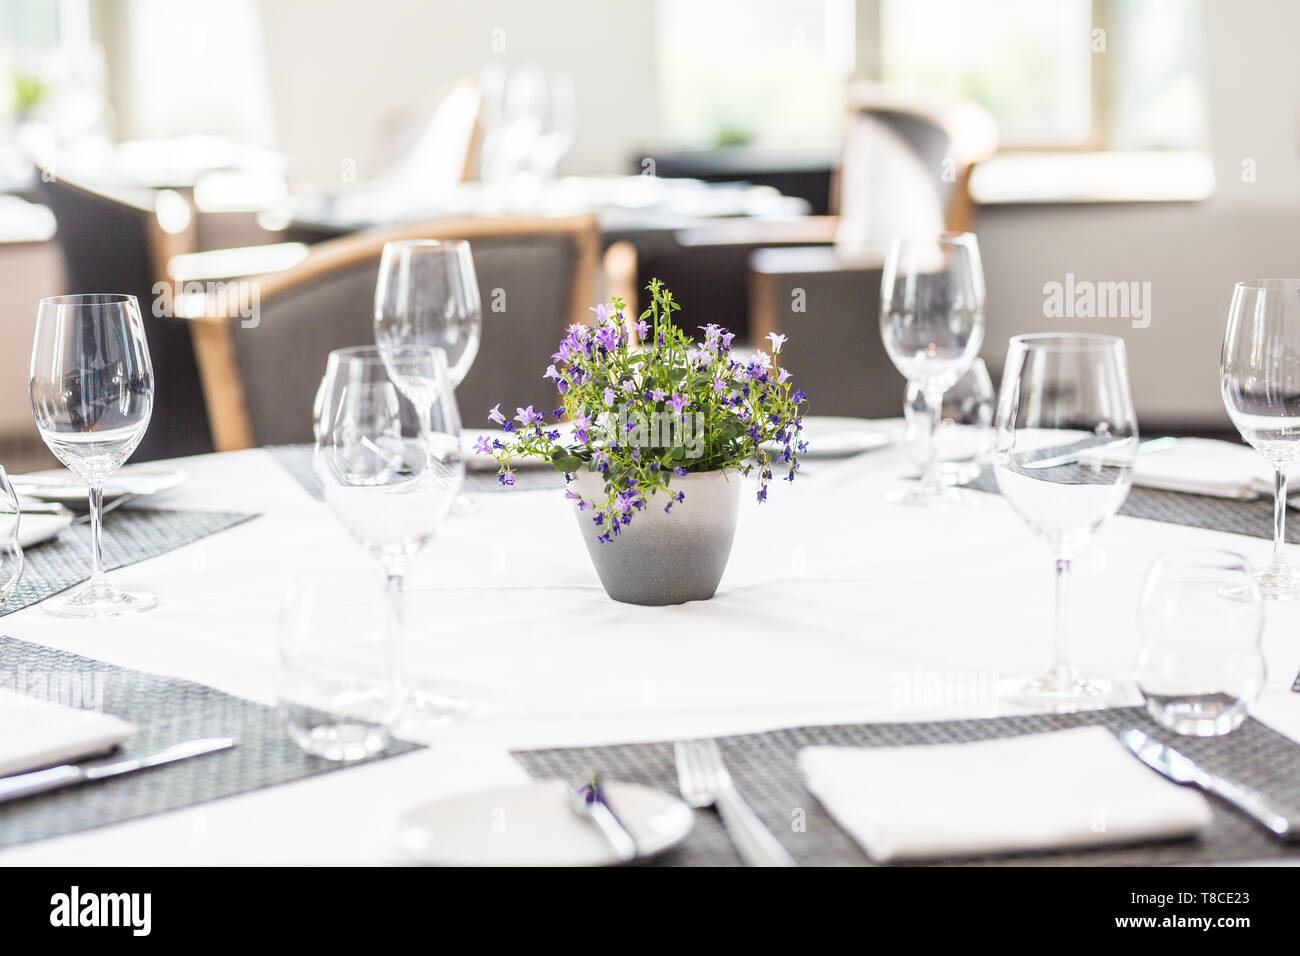 Table de luxe avec verres, serviettes et couverts dans un restaurant ou un hôtel Banque D'Images